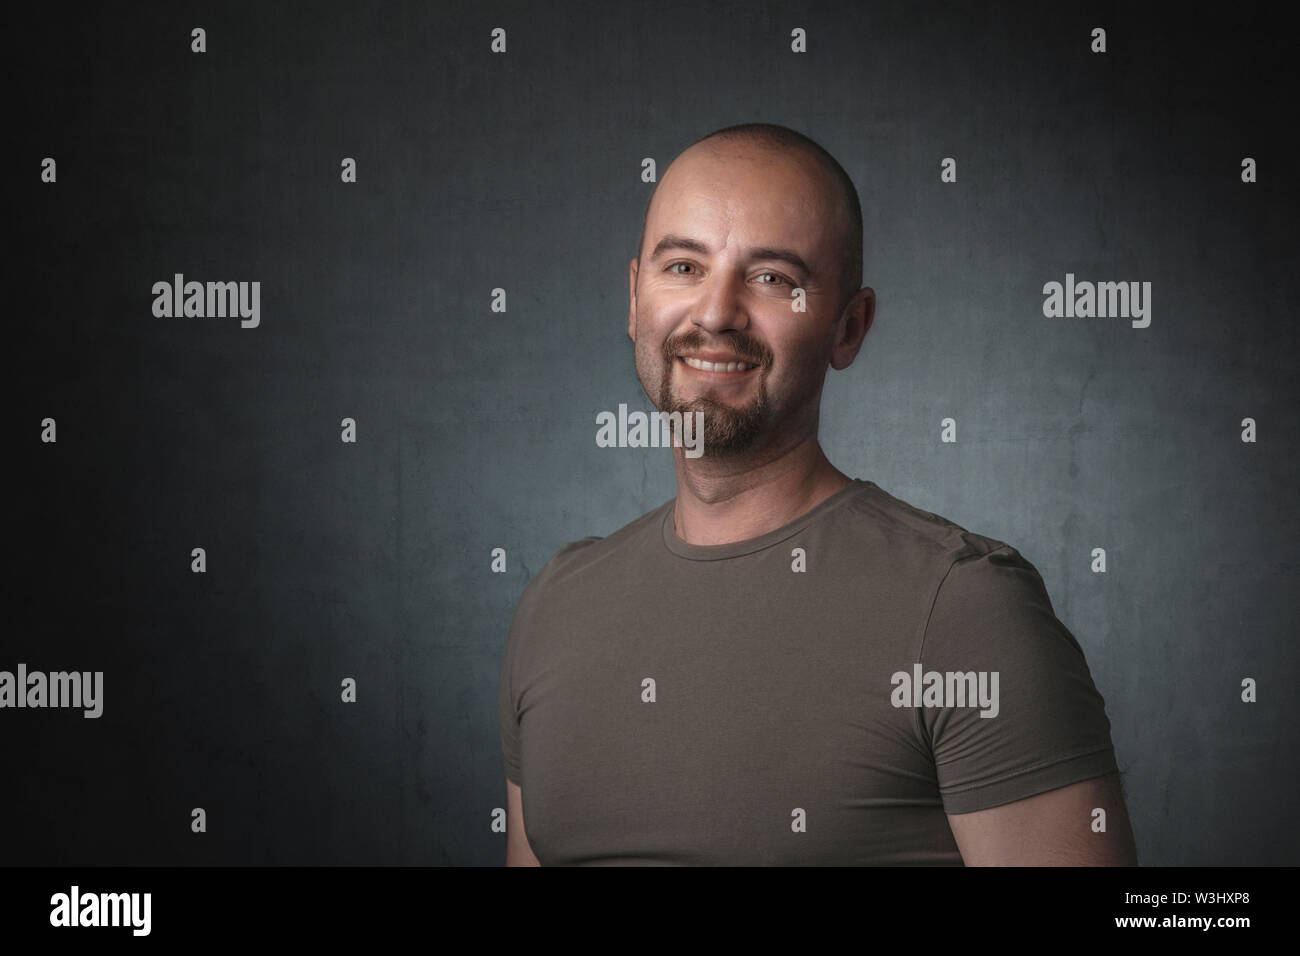 Portrait von lächelnden kaukasischen Mann mit t-shirt und dunklen Hintergrund. Aufnahme im Studio aufgenommen. Stockfoto